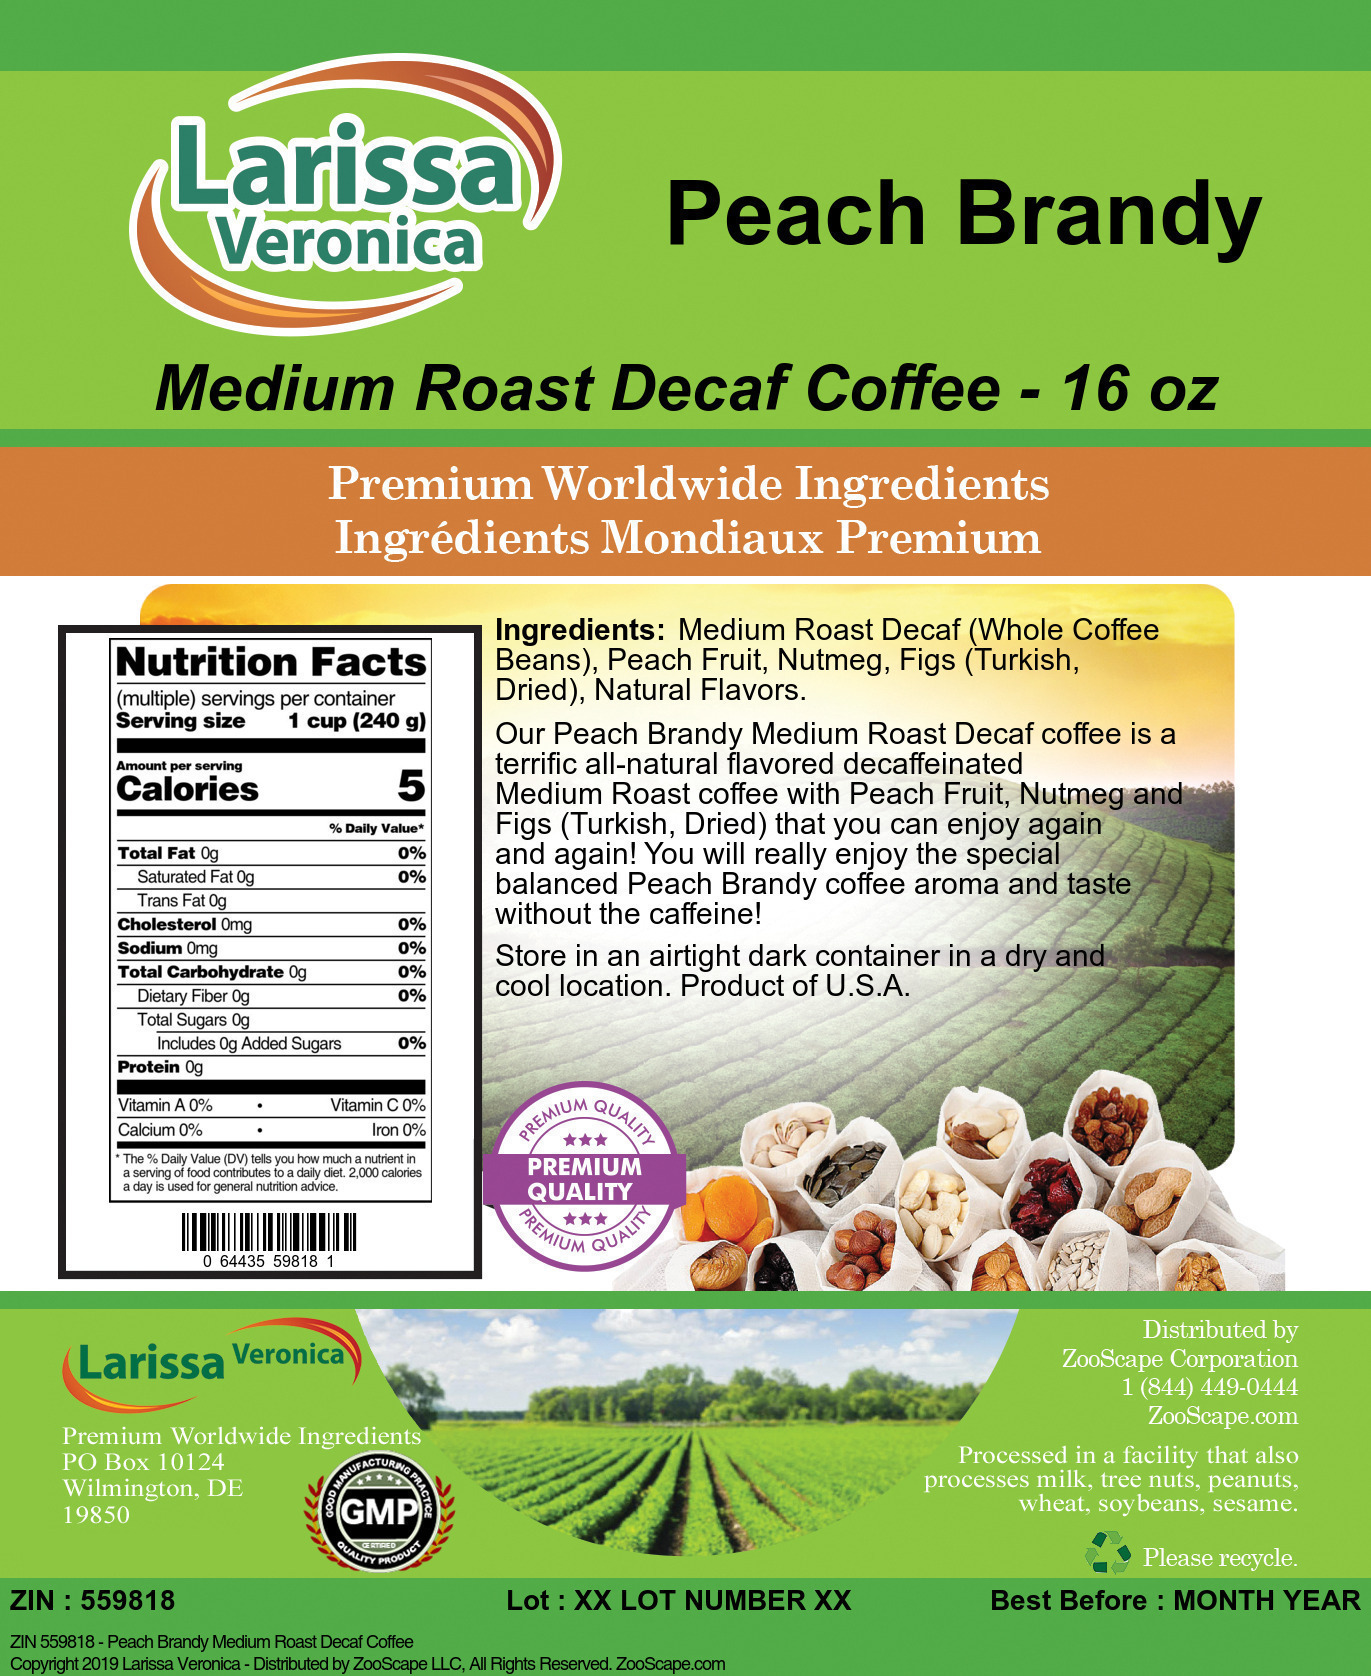 Peach Brandy Medium Roast Decaf Coffee - Label